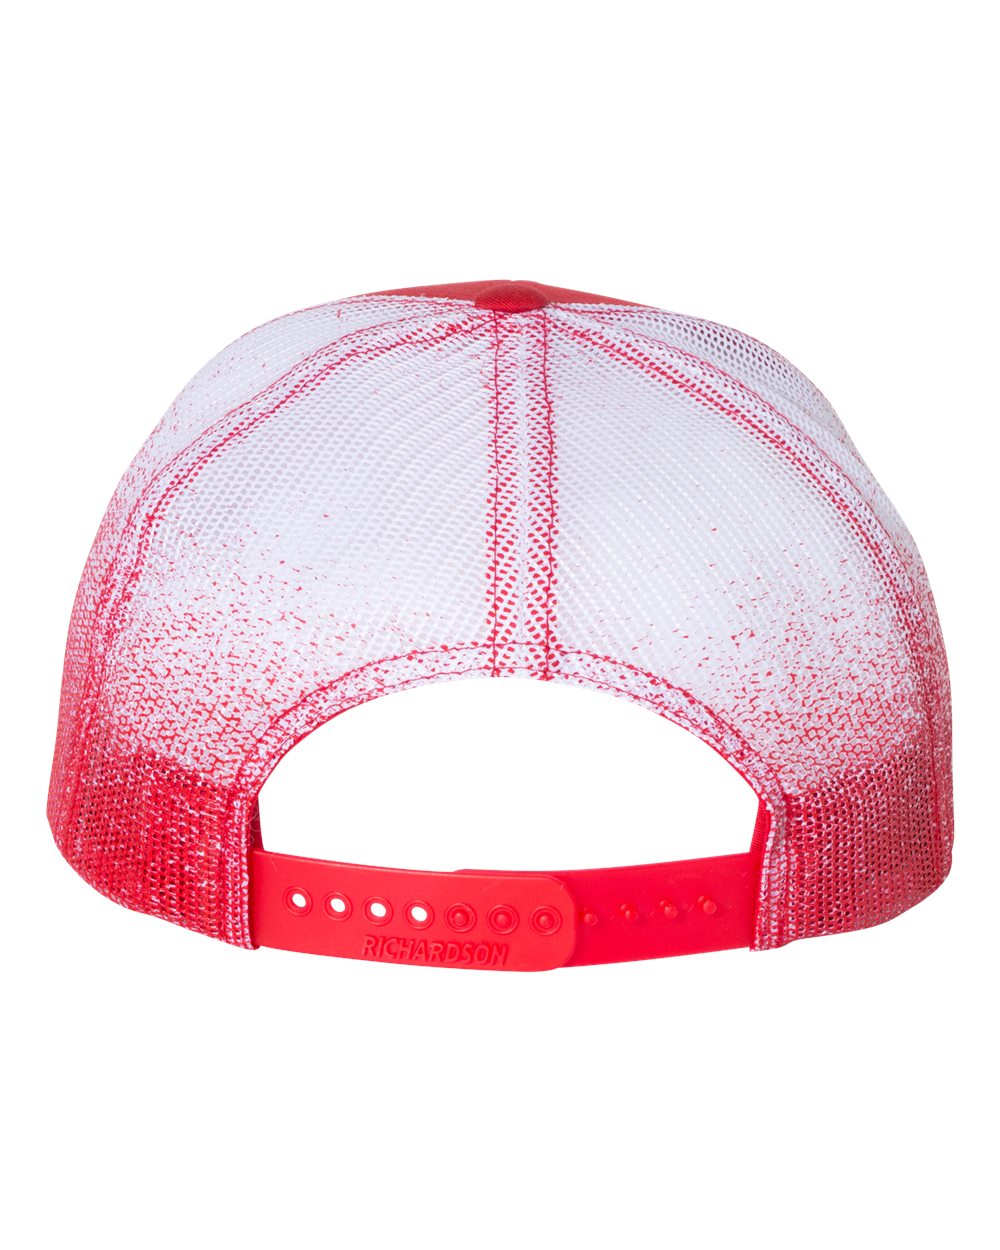 Arkansas Razorbacks- Skull Crushers 3D Patterned Mesh Snapback Trucker Hat- Red/ Red to White Fade - Ten Gallon Hat Co.